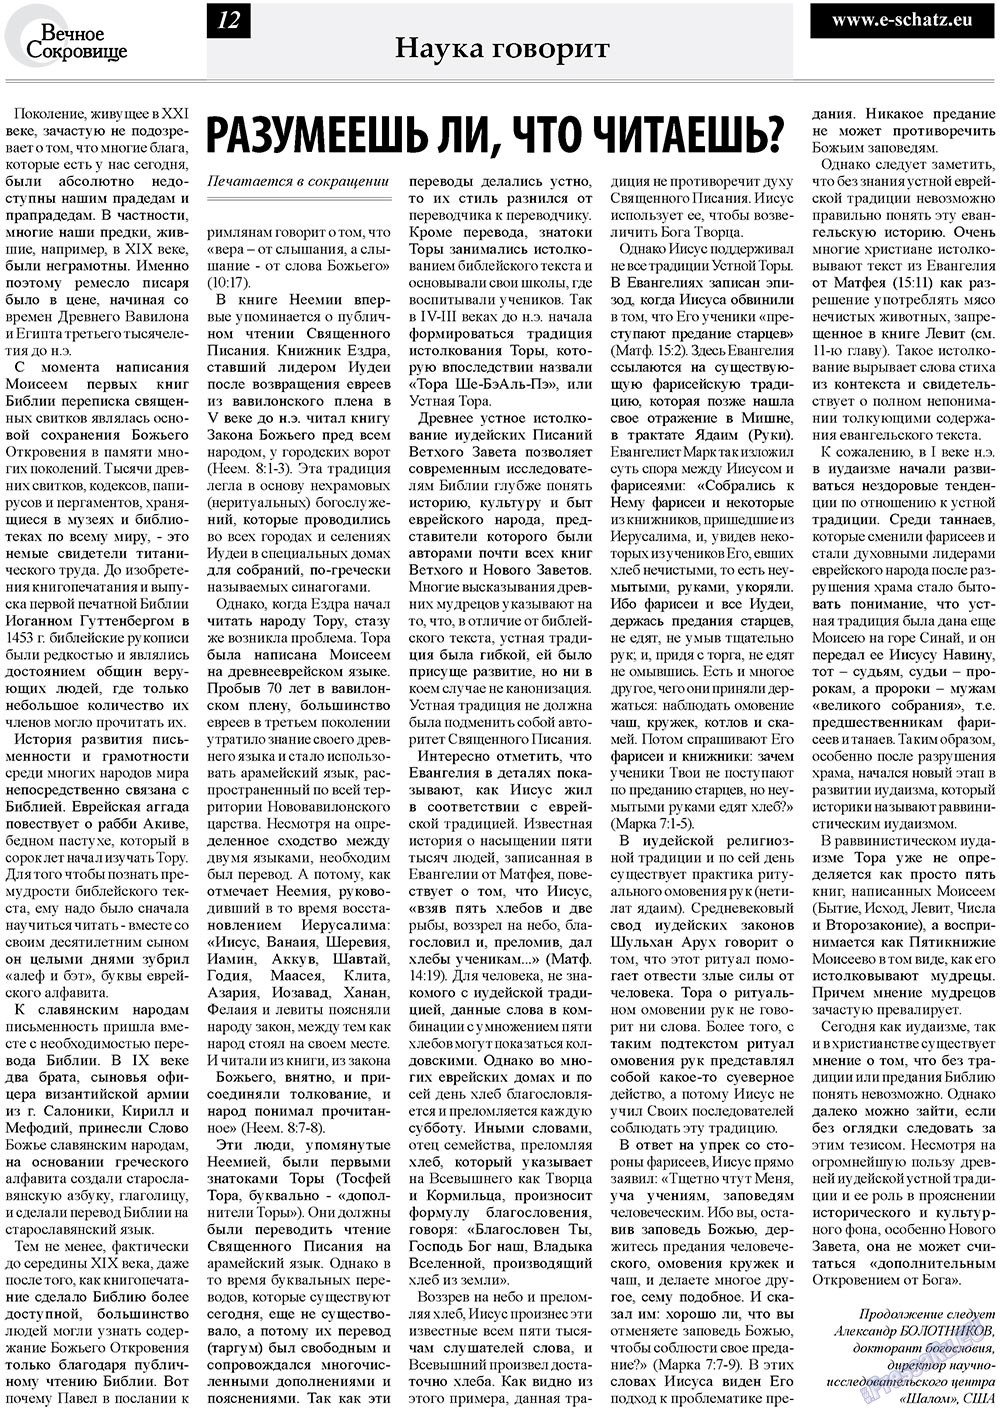 Вечное сокровище, газета. 2010 №3 стр.12